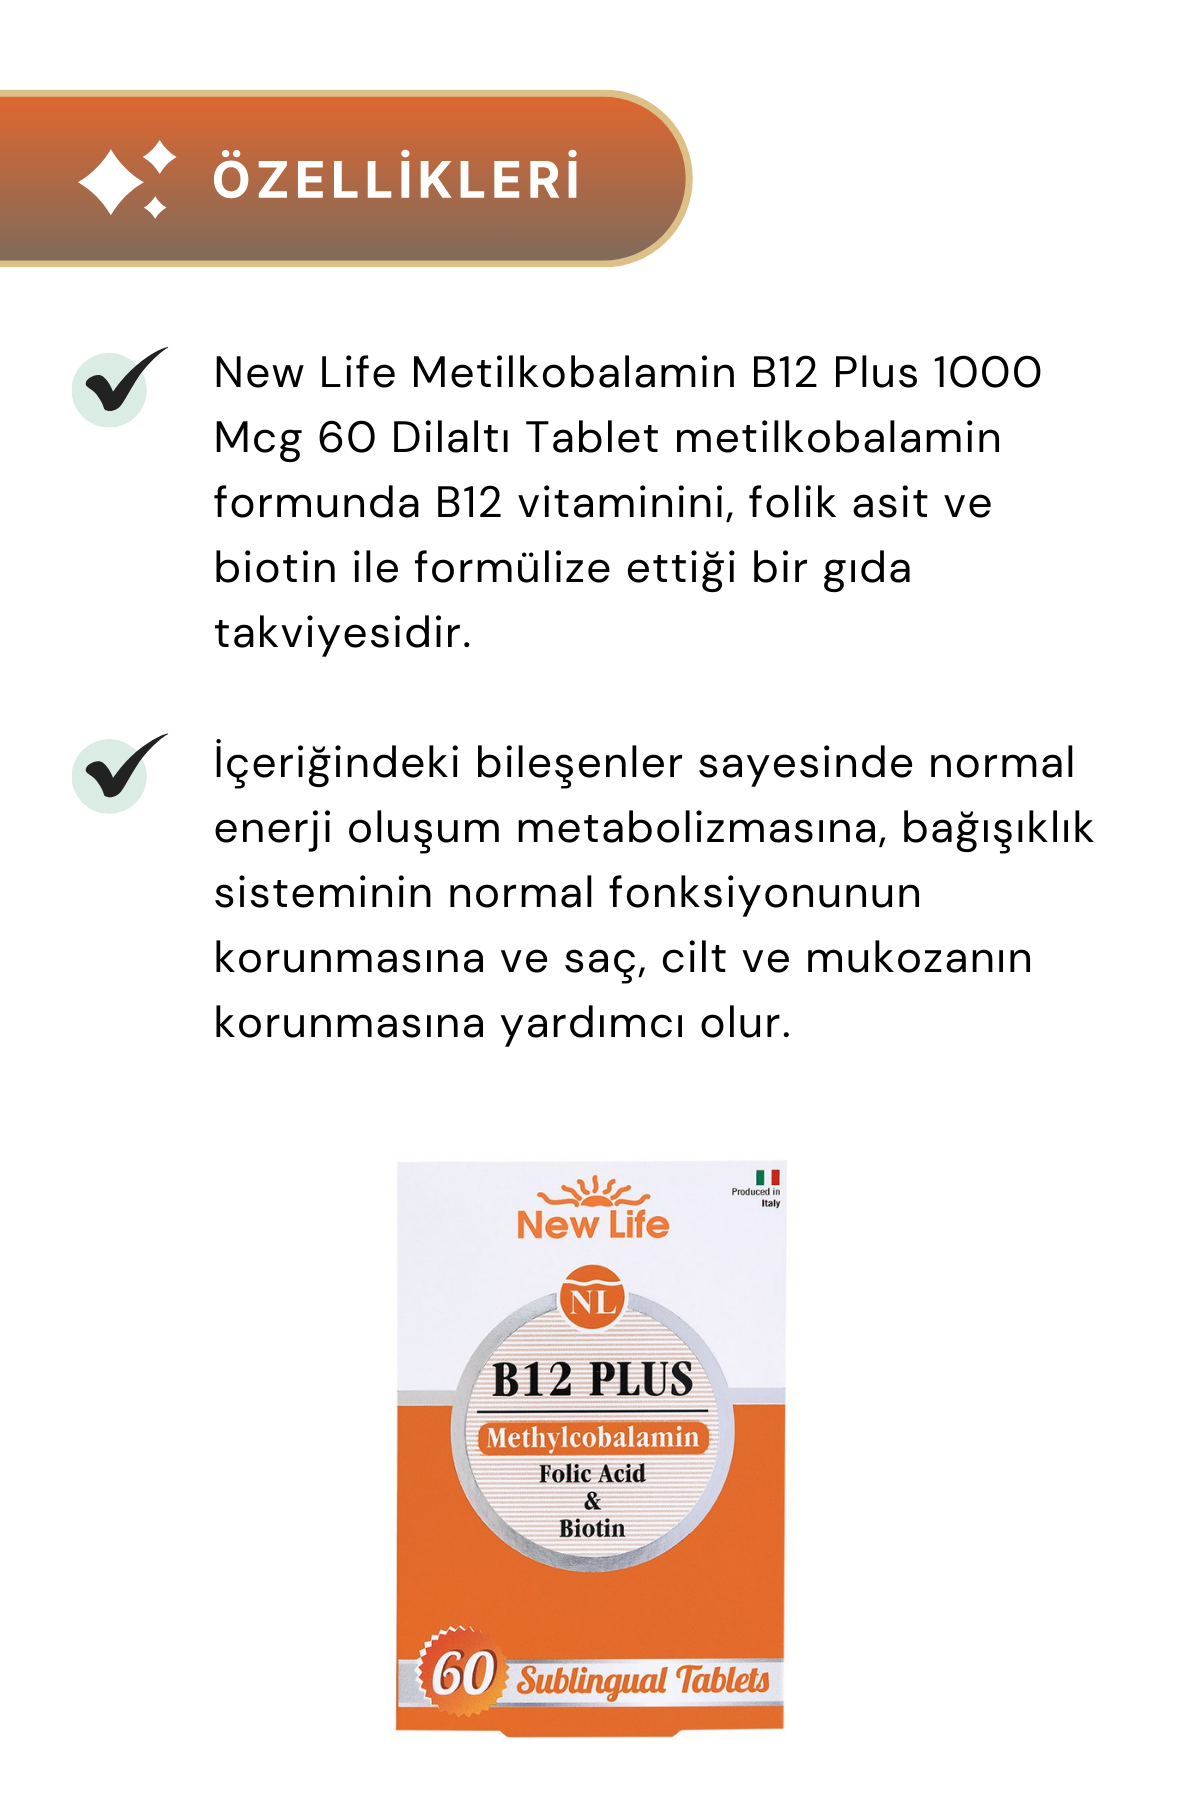 New Life B12 Plus Methylcobalamin 60 Dilaltı Tablet 2'li Paket